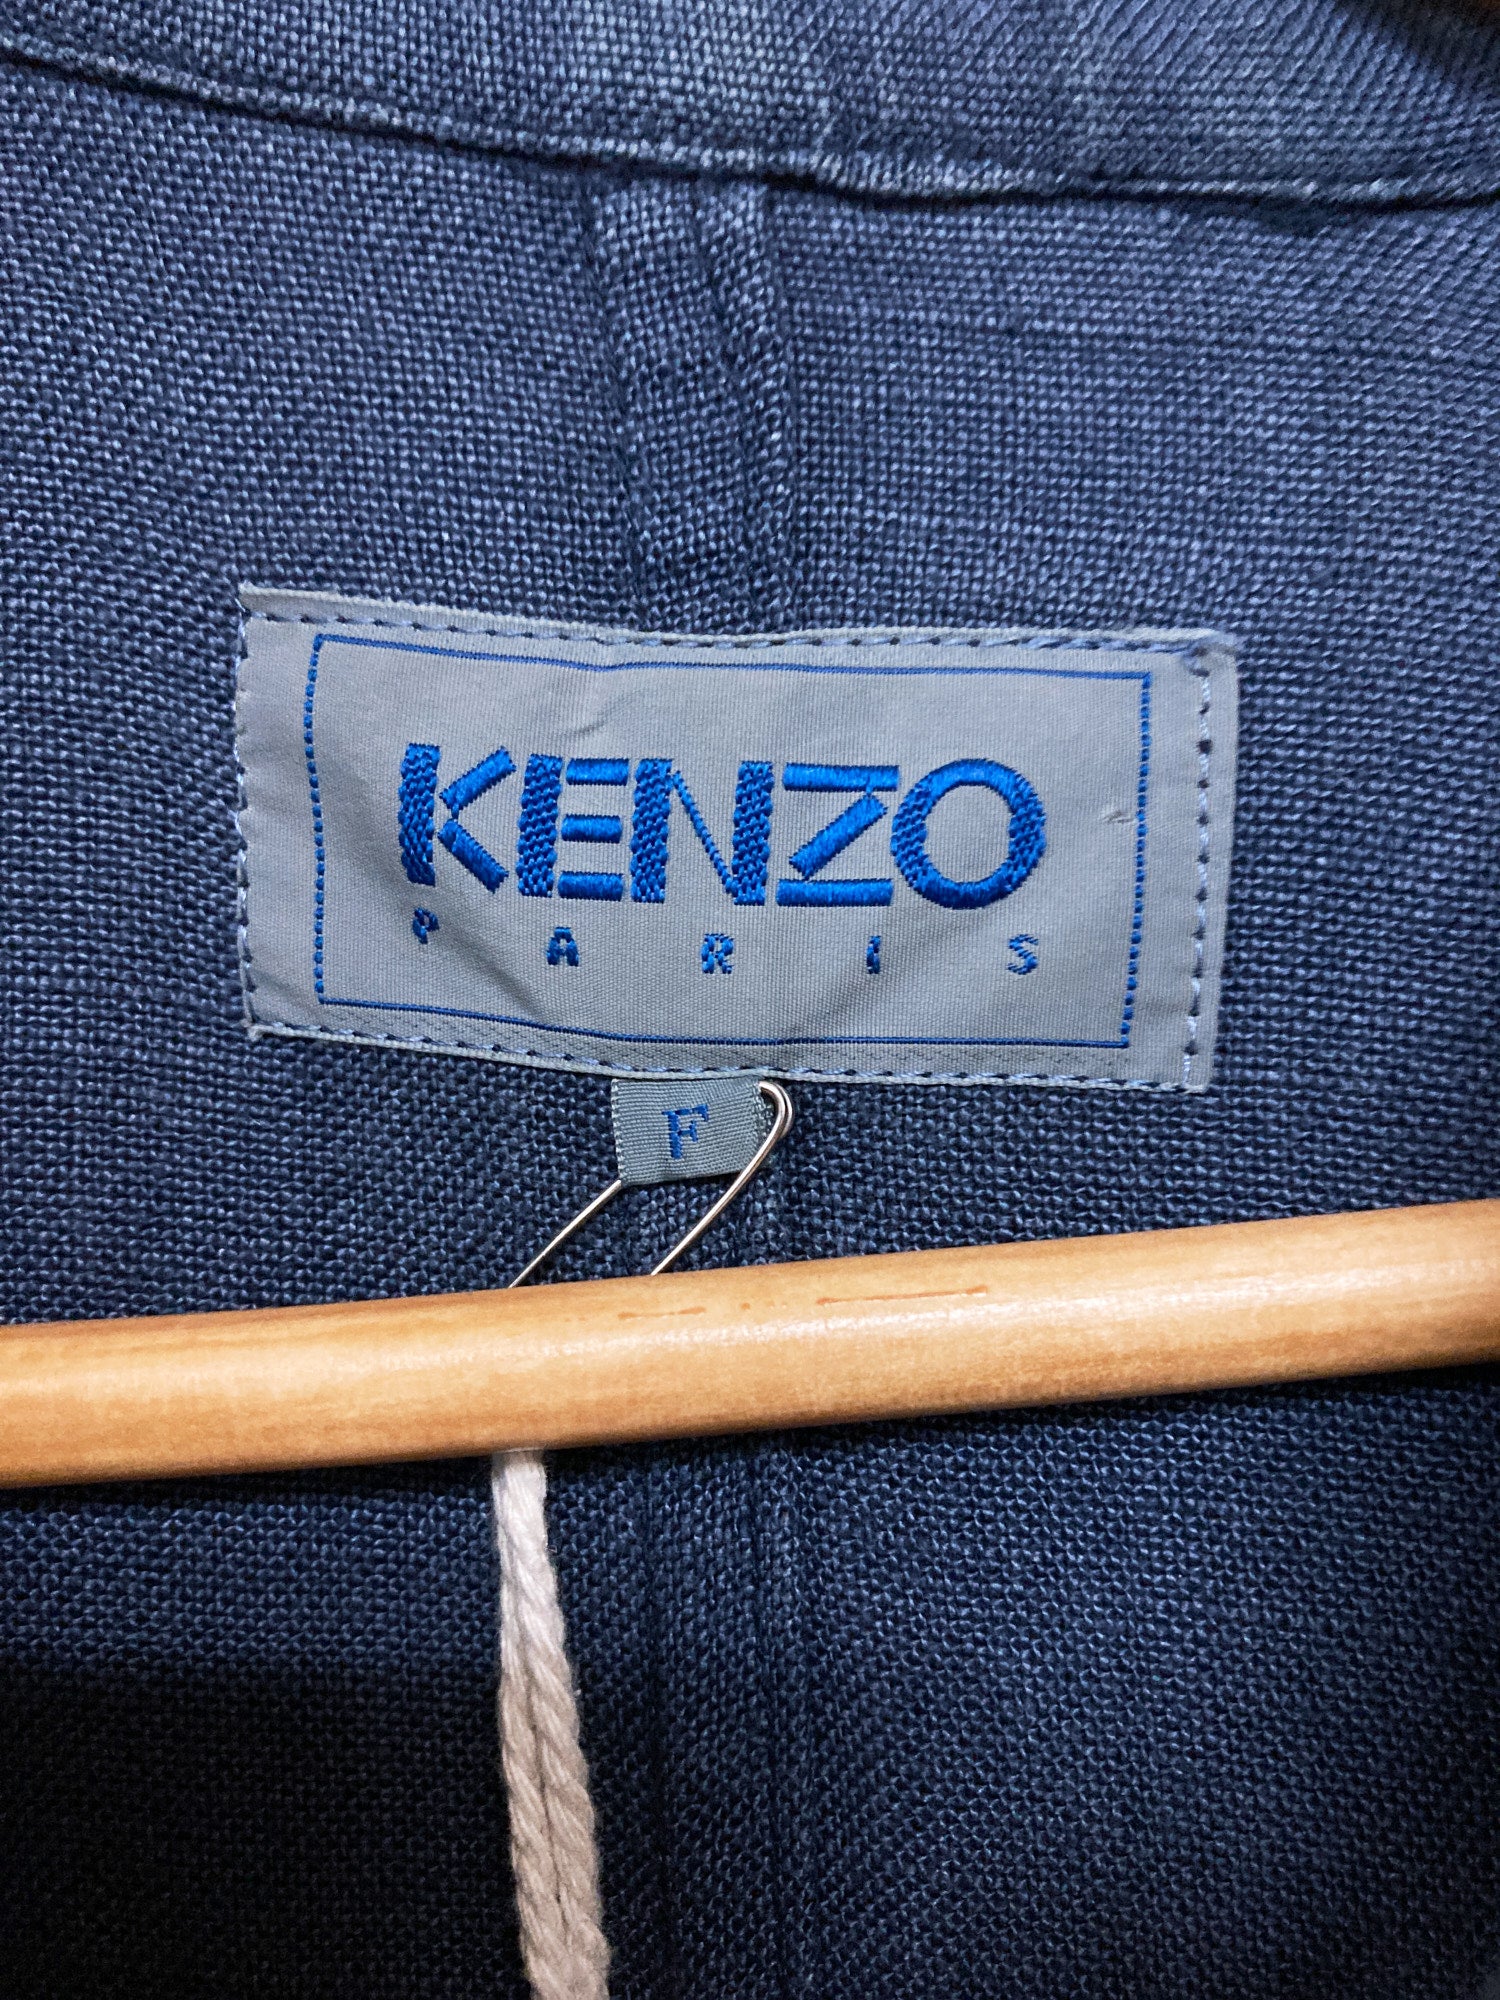 Kenzo Paris 1980s indigo linen hooded zip jacket - M L S